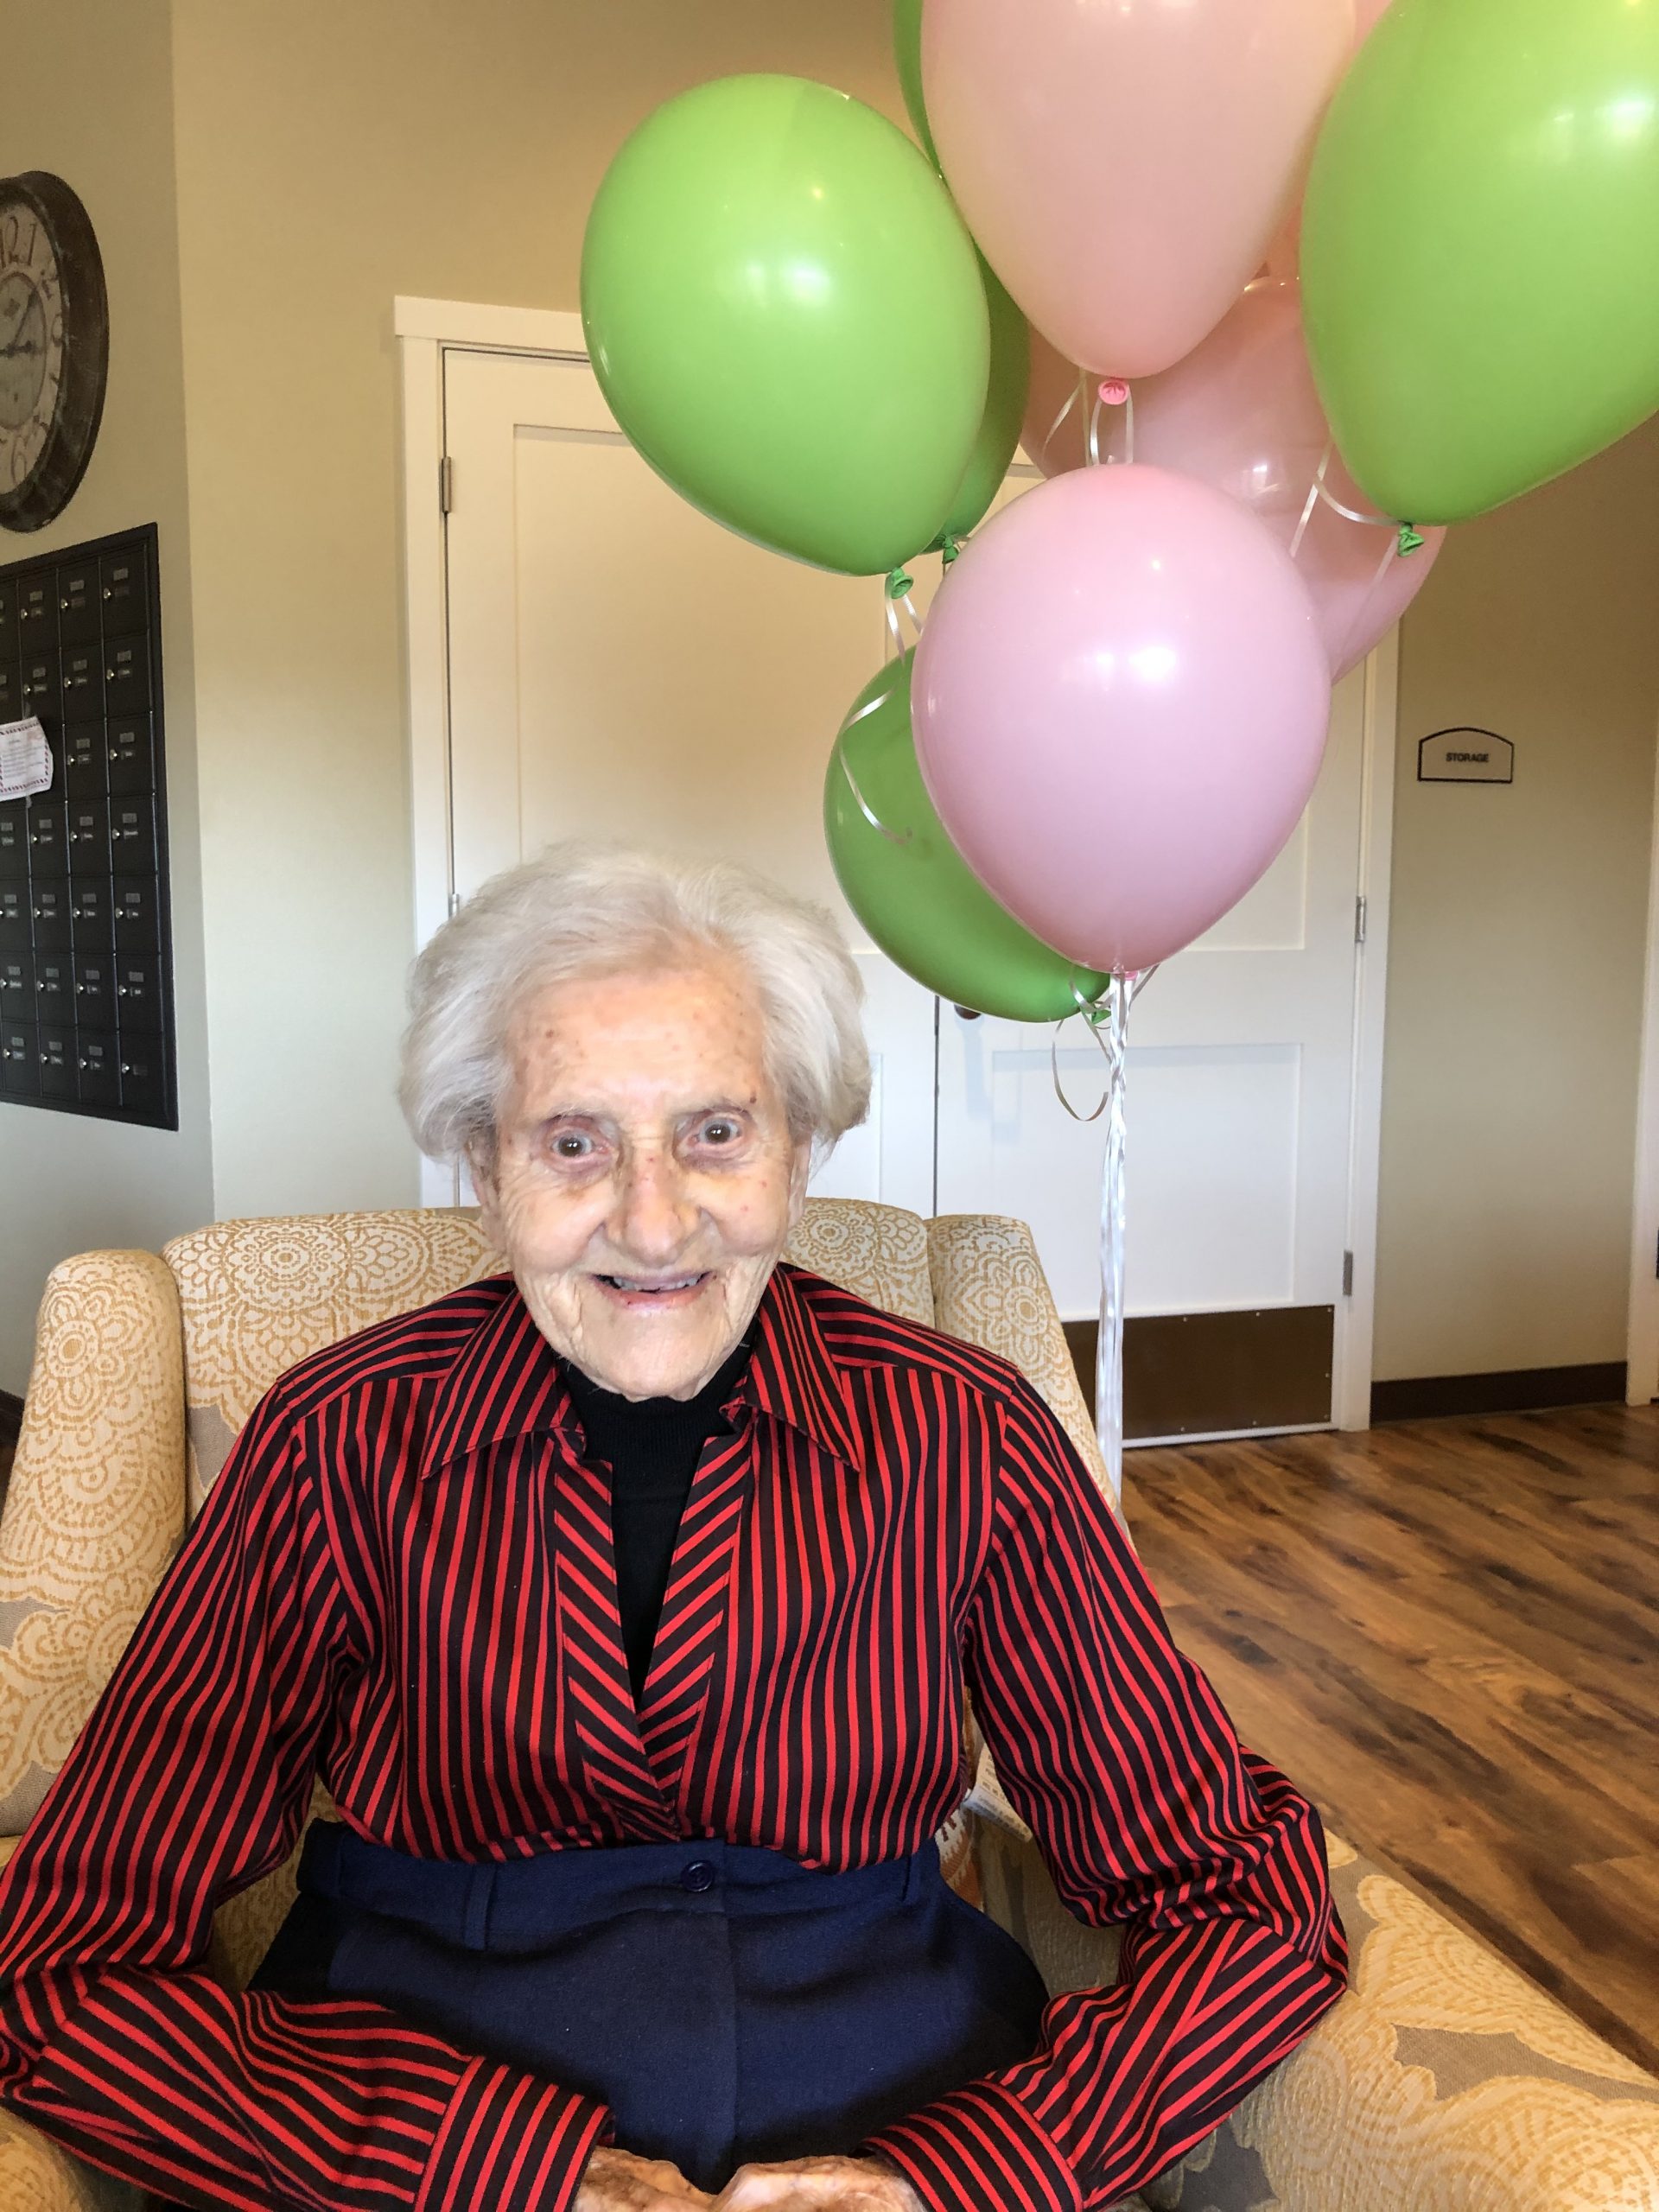 Two local Atterdag Village women turn 100